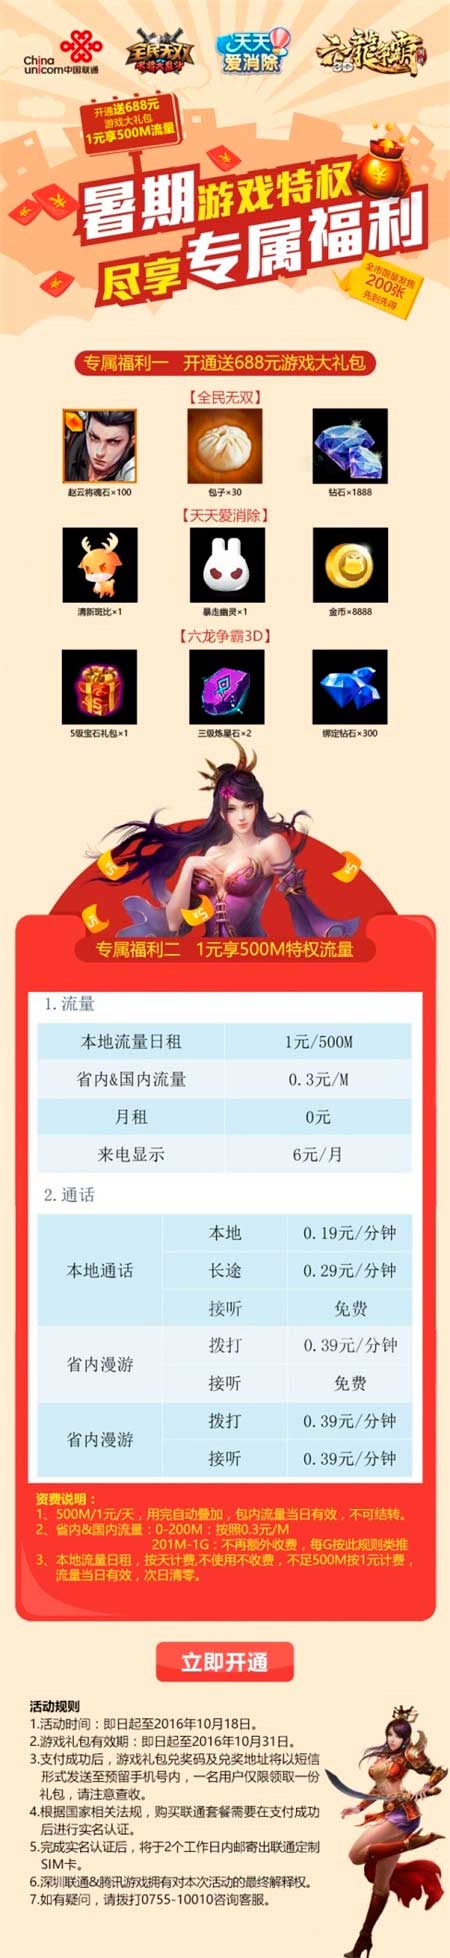 六龙争霸3D携深圳联通推定制流量套餐 畅玩全明星周末